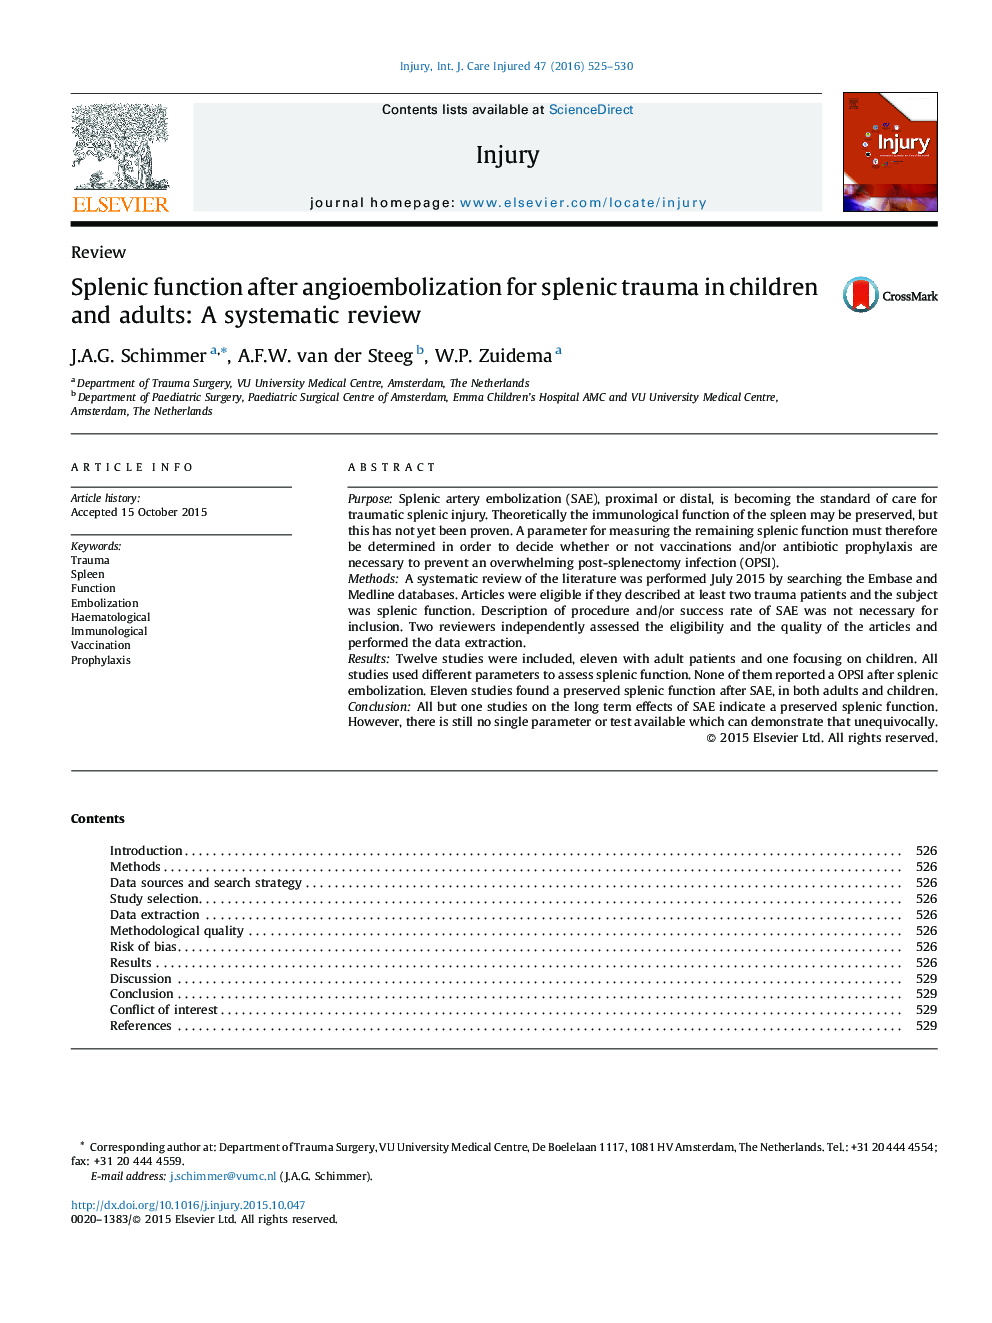 عملکرد اسپلنیک پس از آنژیوآمبولیزاسیون برای ضایعه نخاعی در کودکان و بزرگسالان: بررسی سیستماتیک 